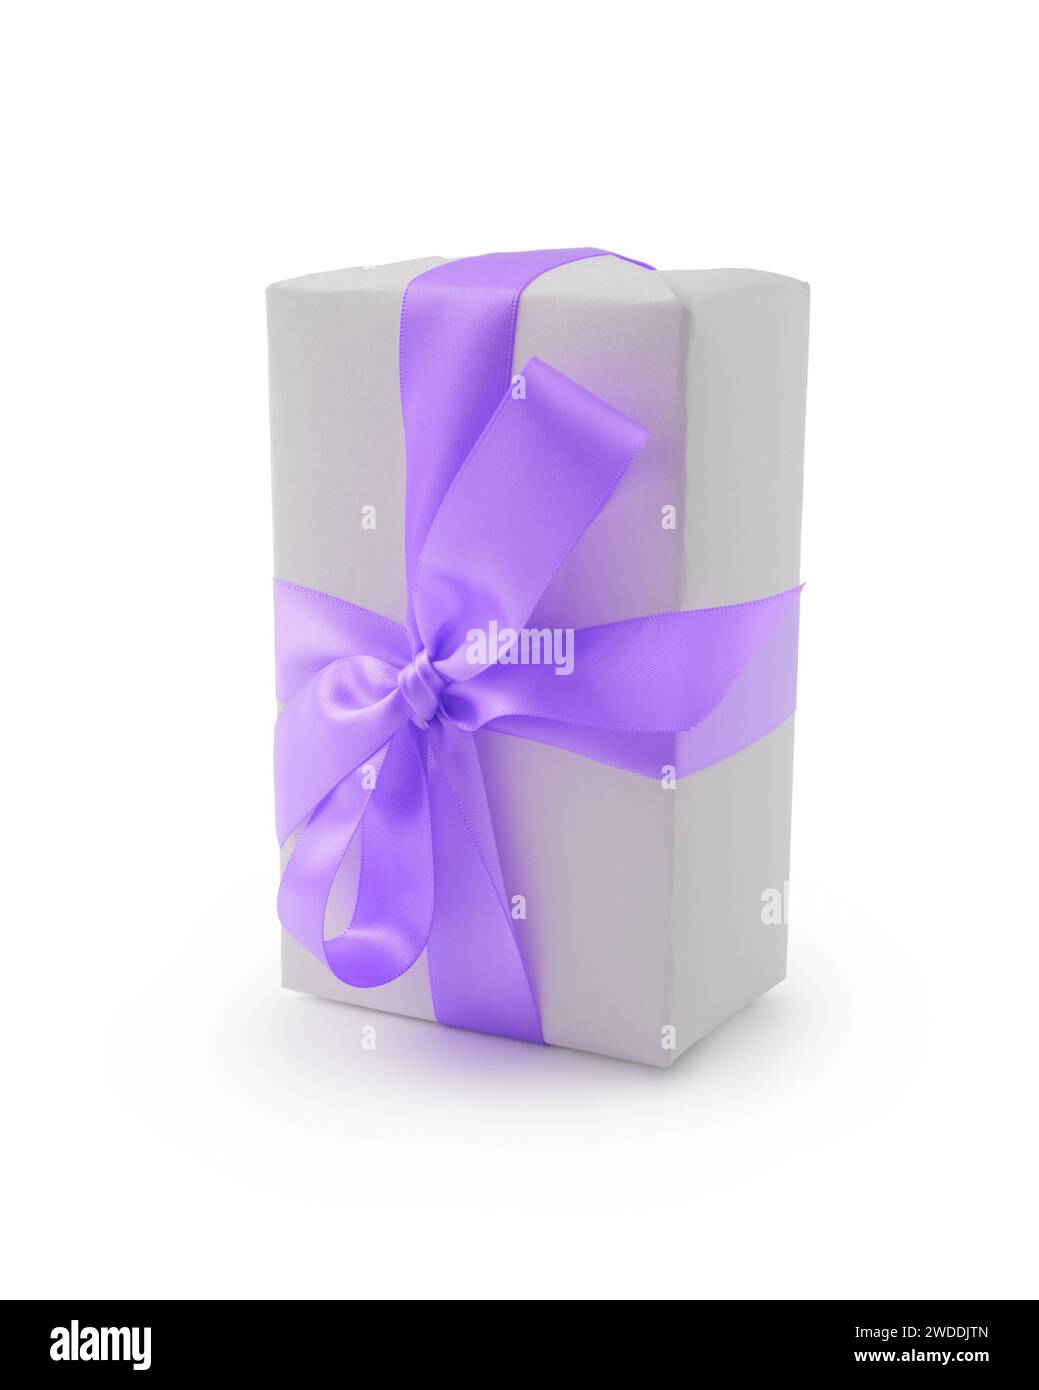 Confezione regalo bianca con fiocco a nastro viola isolata su sfondo bianco, oggetto natalizio Foto Stock